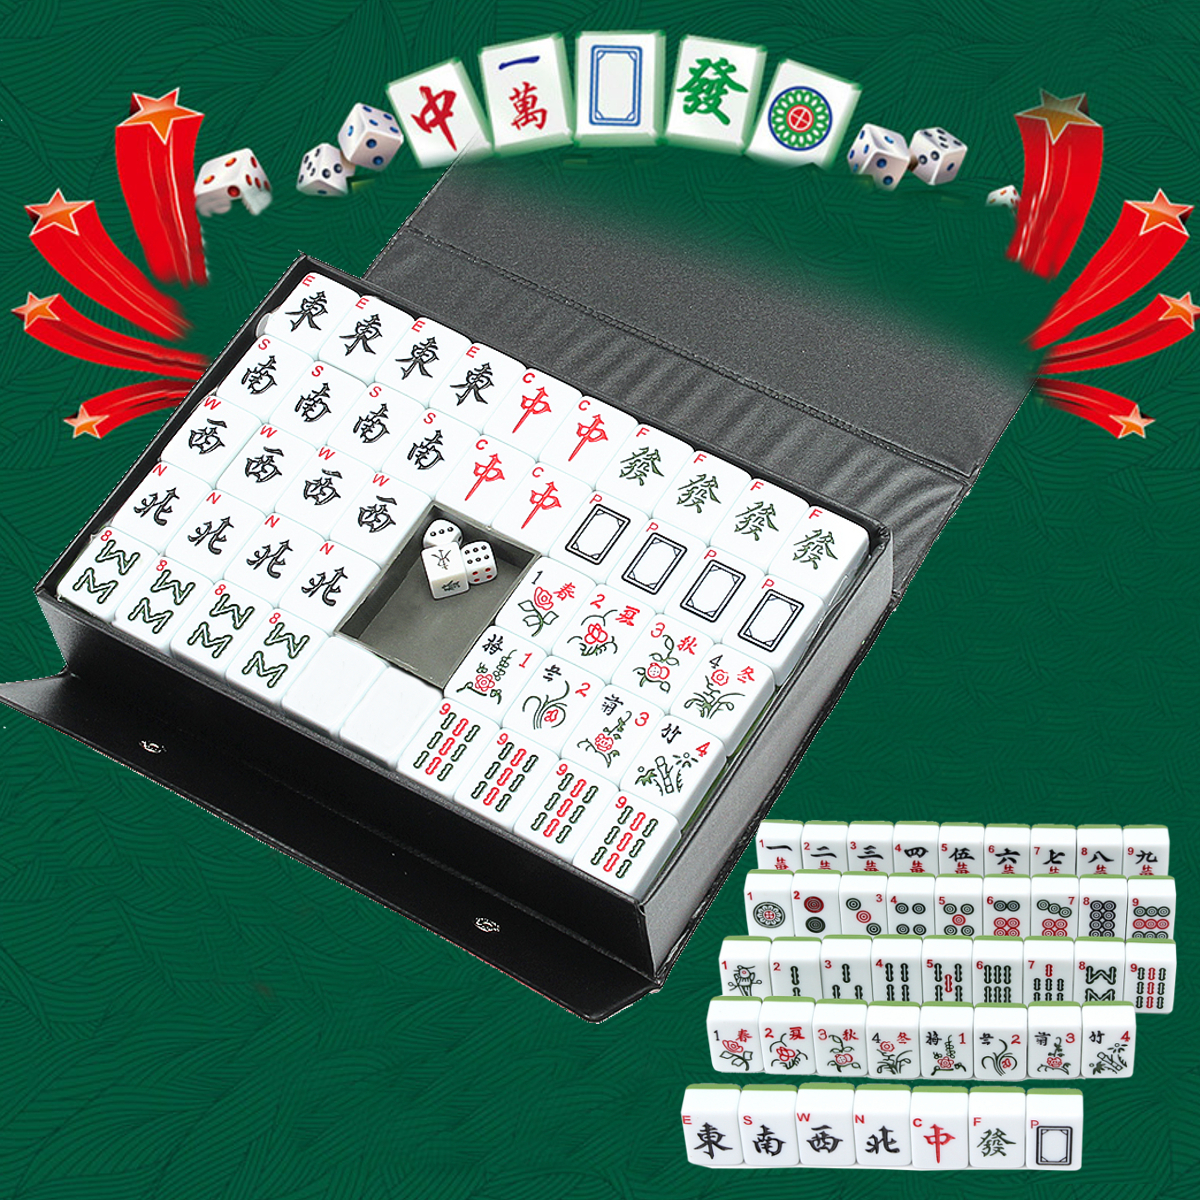 Portable-Vintage-Collection-Chinese-Mahjong-Rare-Game-144-Tiles-Mah-Jong-Set-1706671-1